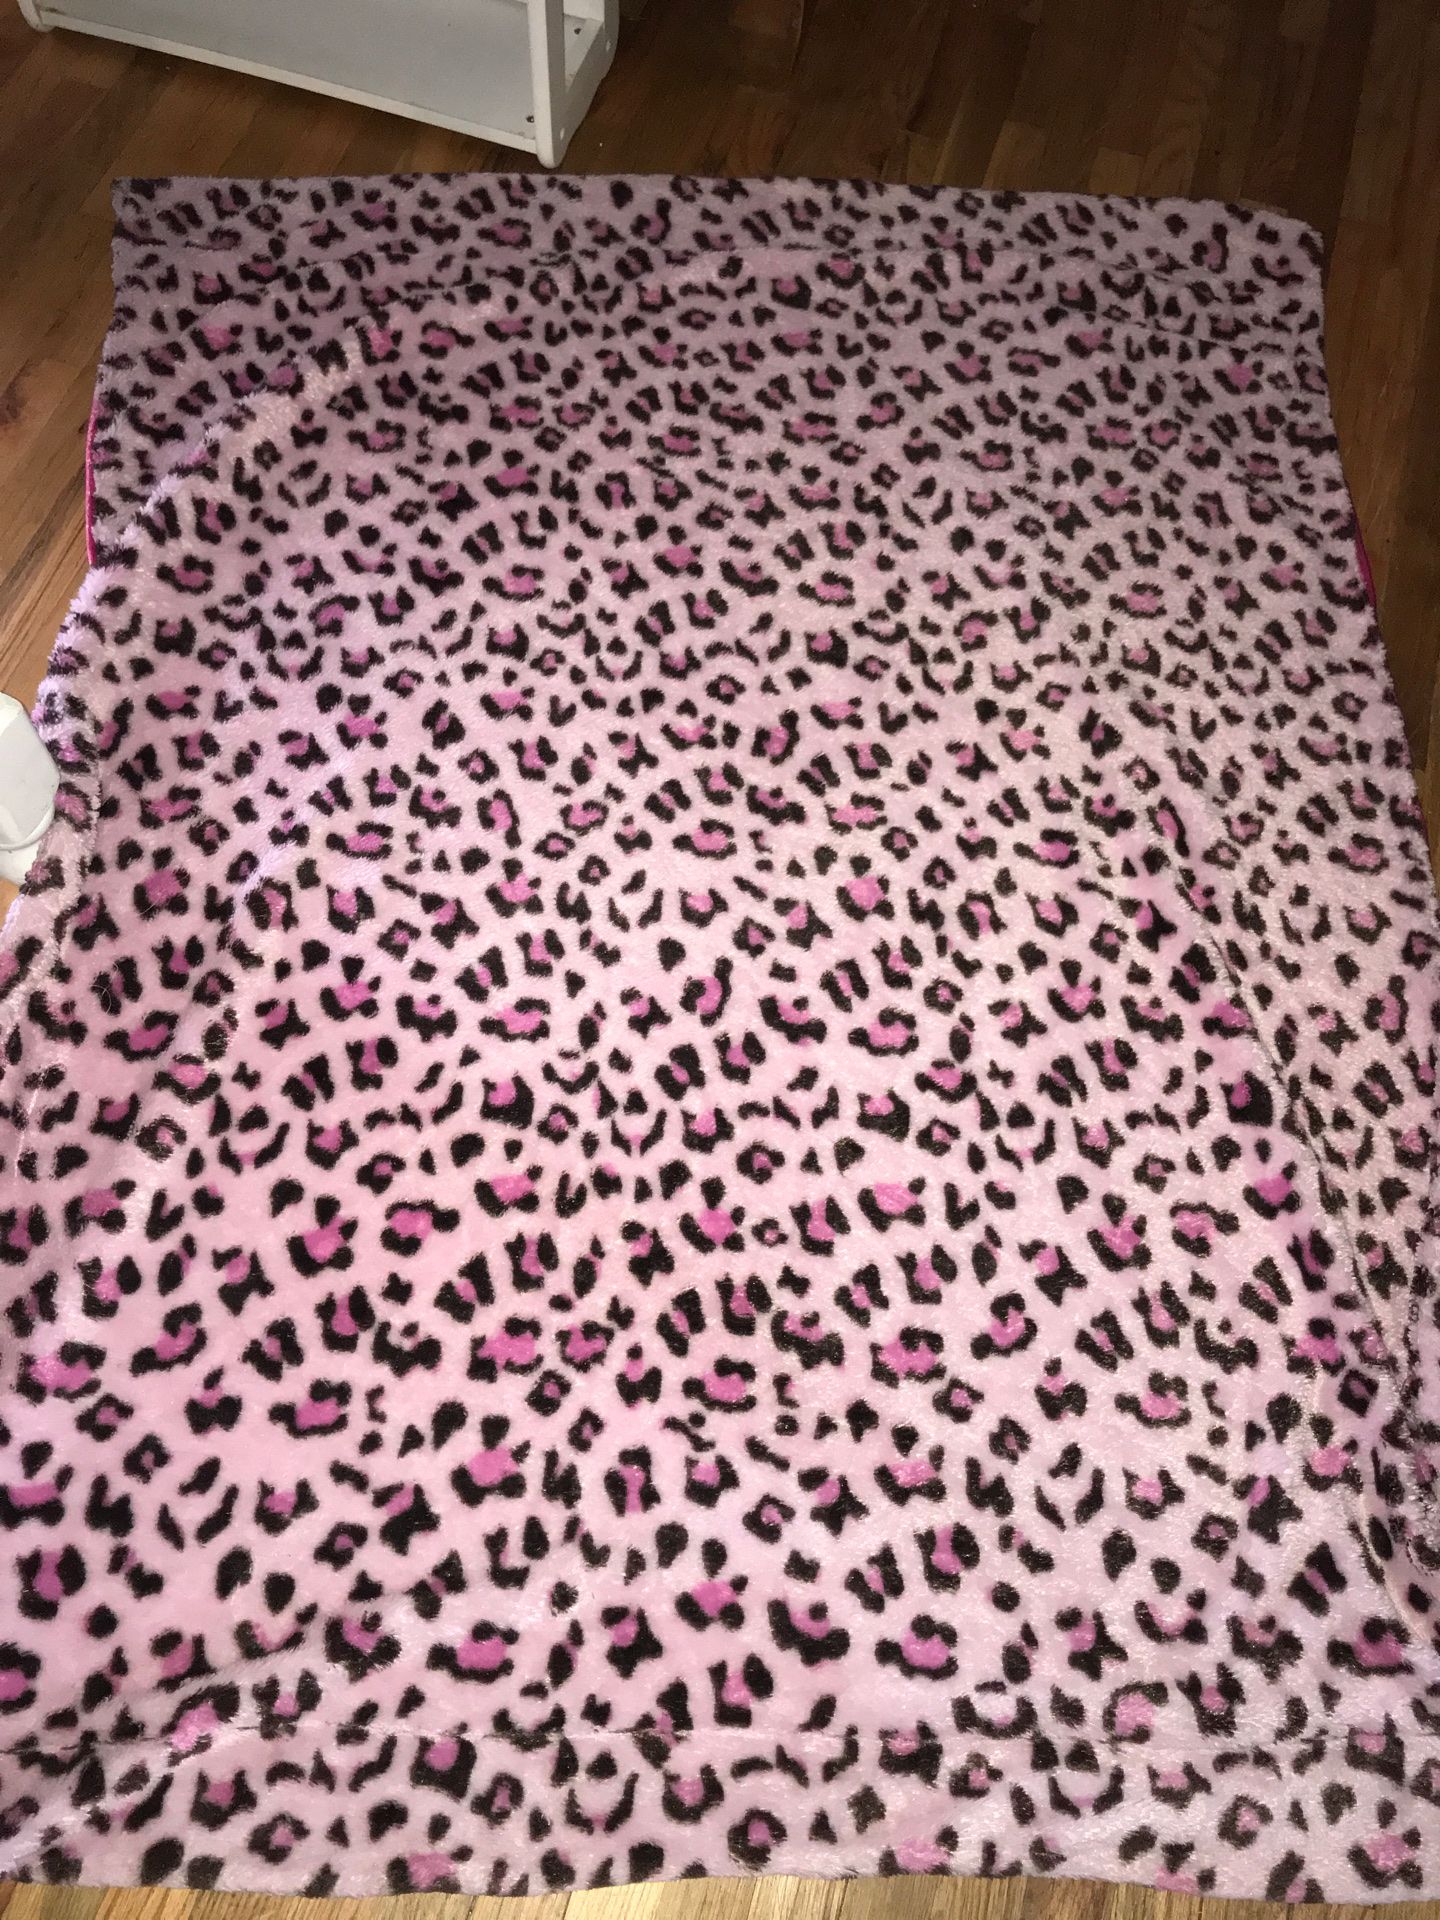 Pink Cheetah Fur Throw Blanket